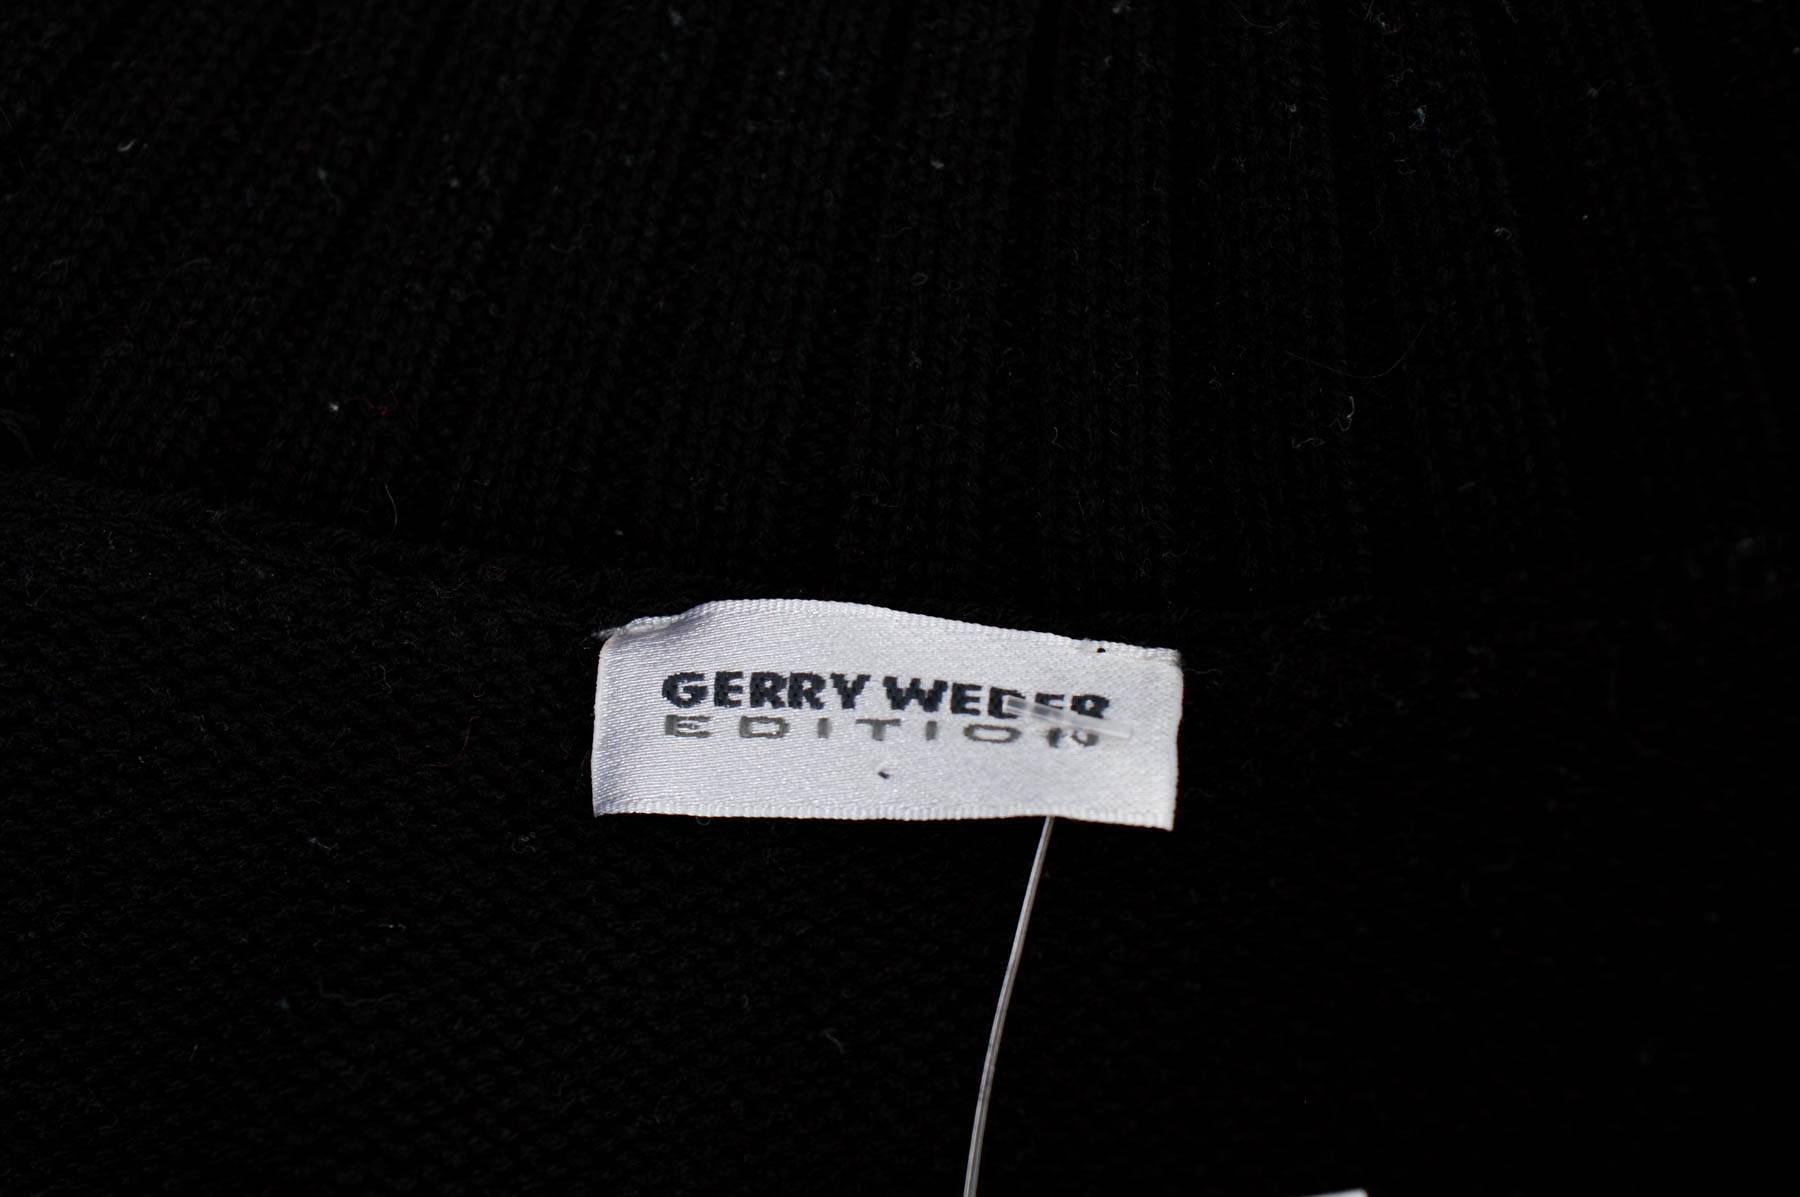 Cardigan / Jachetă de damă - GERRY WEBER - 2